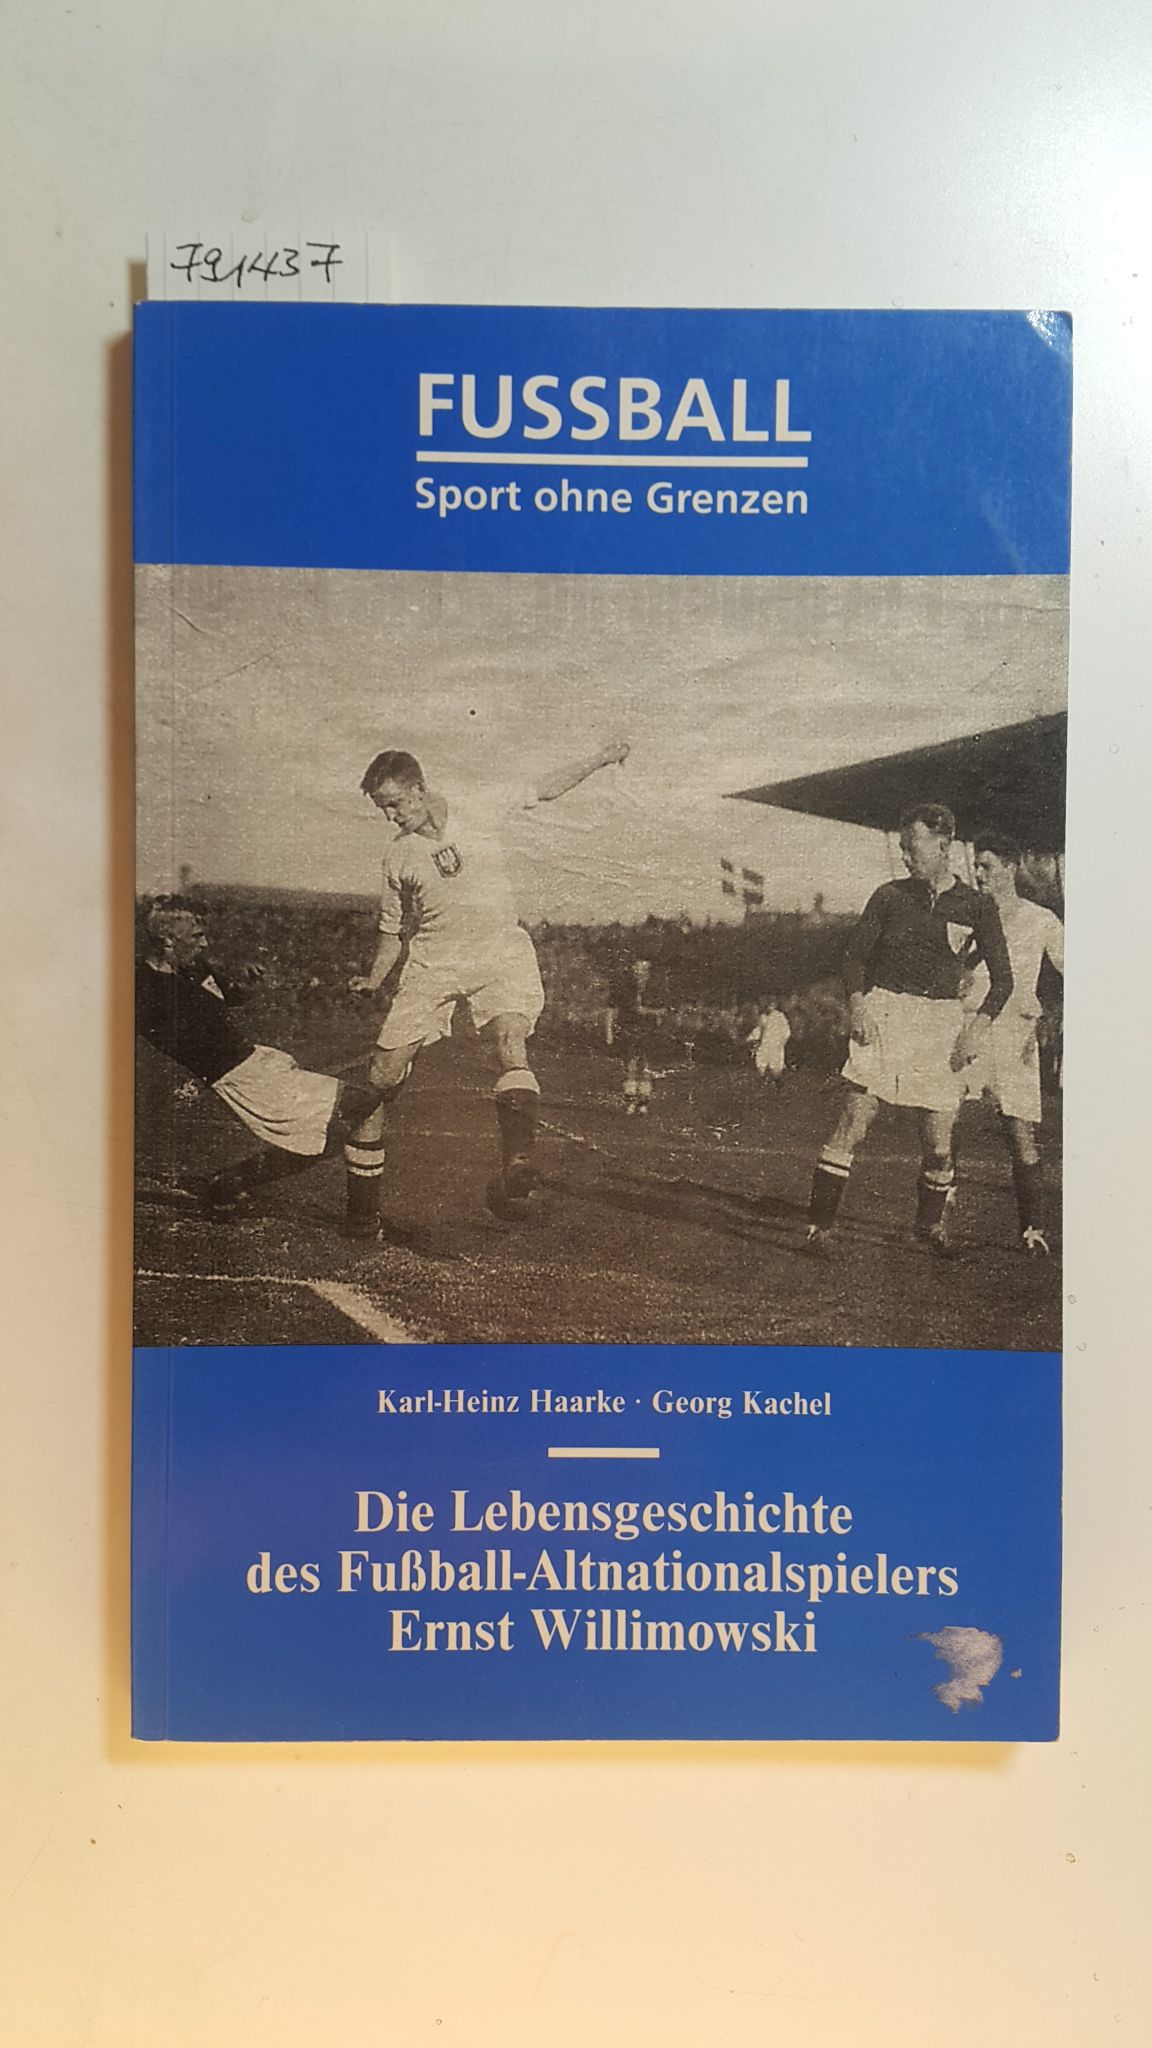 Fussball, Sport ohne Grenzen : die Lebensgeschichte des Fussball-Altnationalspielers Ernst Willimowski - Haarke, Karl-Heinz